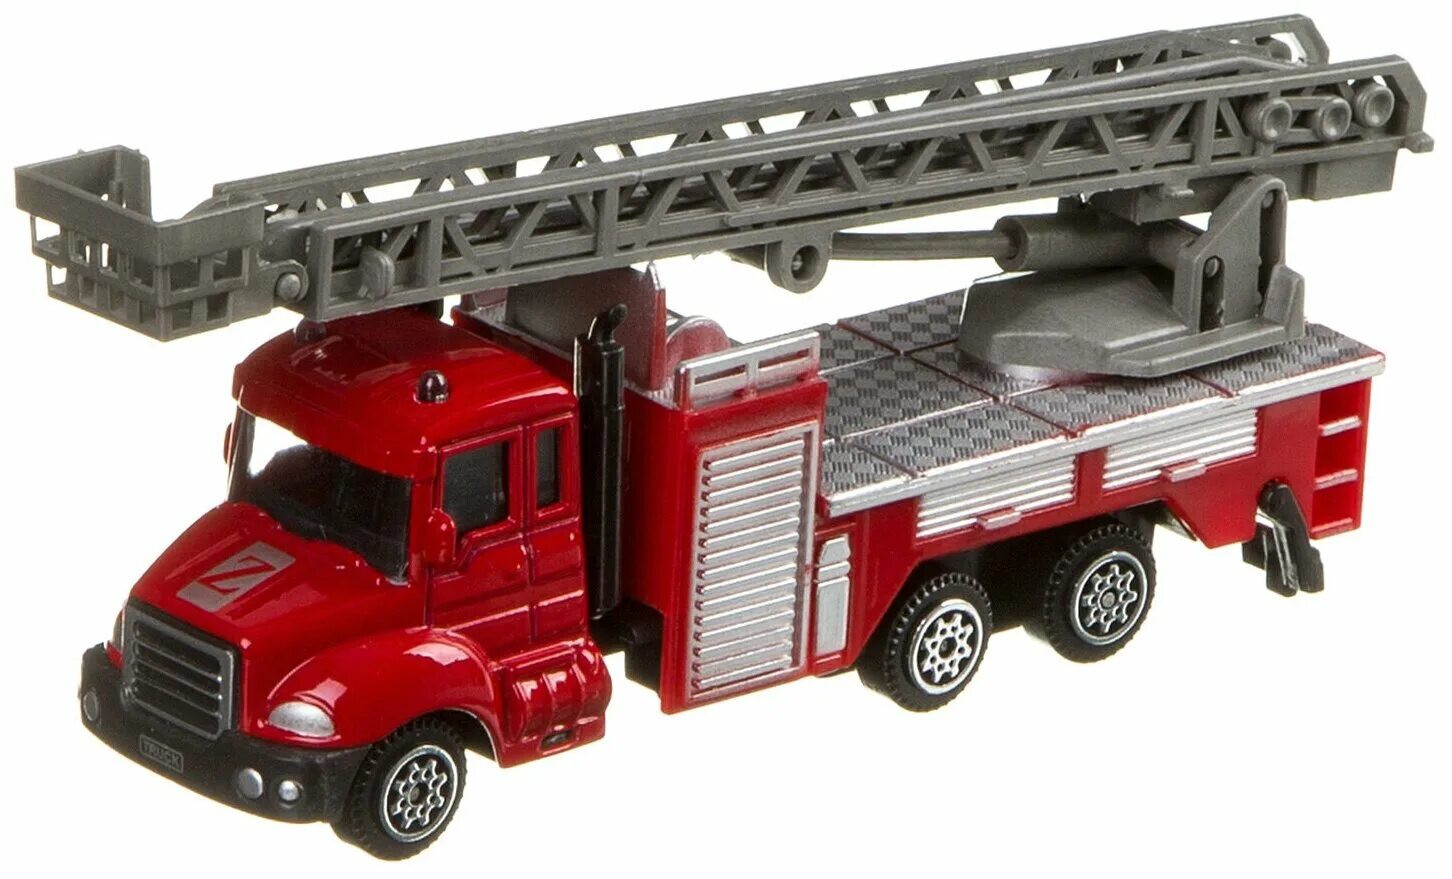 Пожарная машина Fire Station Mobicaro. Пожарный автомобиль Donbful 1814-1c 1:64 18 см. Mobicaro пожарная машина wy851a. Машинки пожарная машина